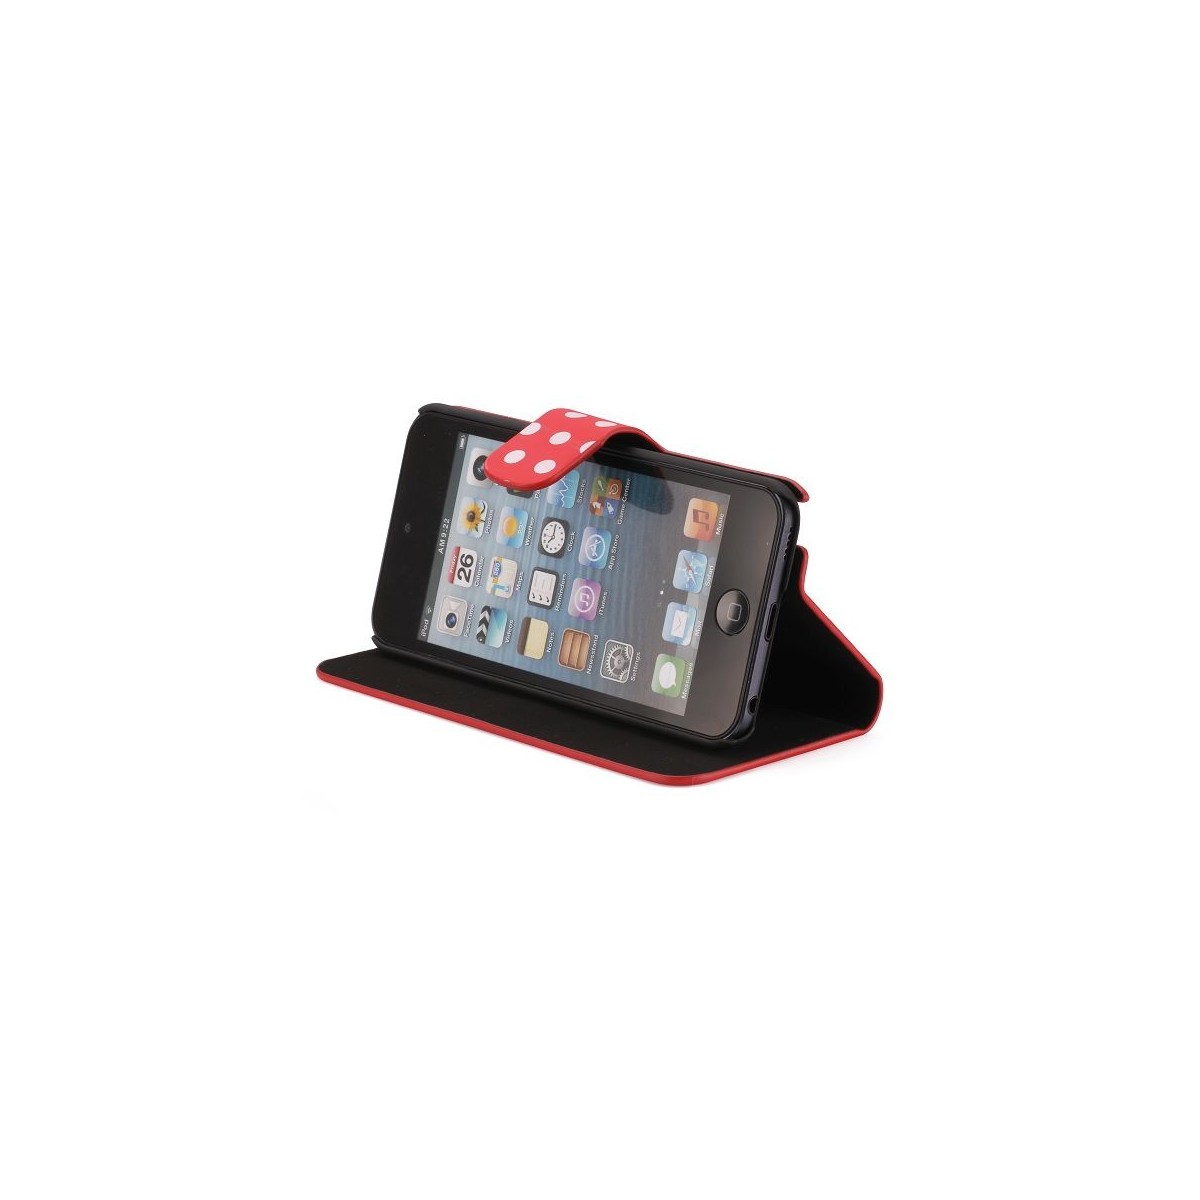 Etui cuir rouge à pois blanc ouverture horizontale pour Apple iPod Touch 5